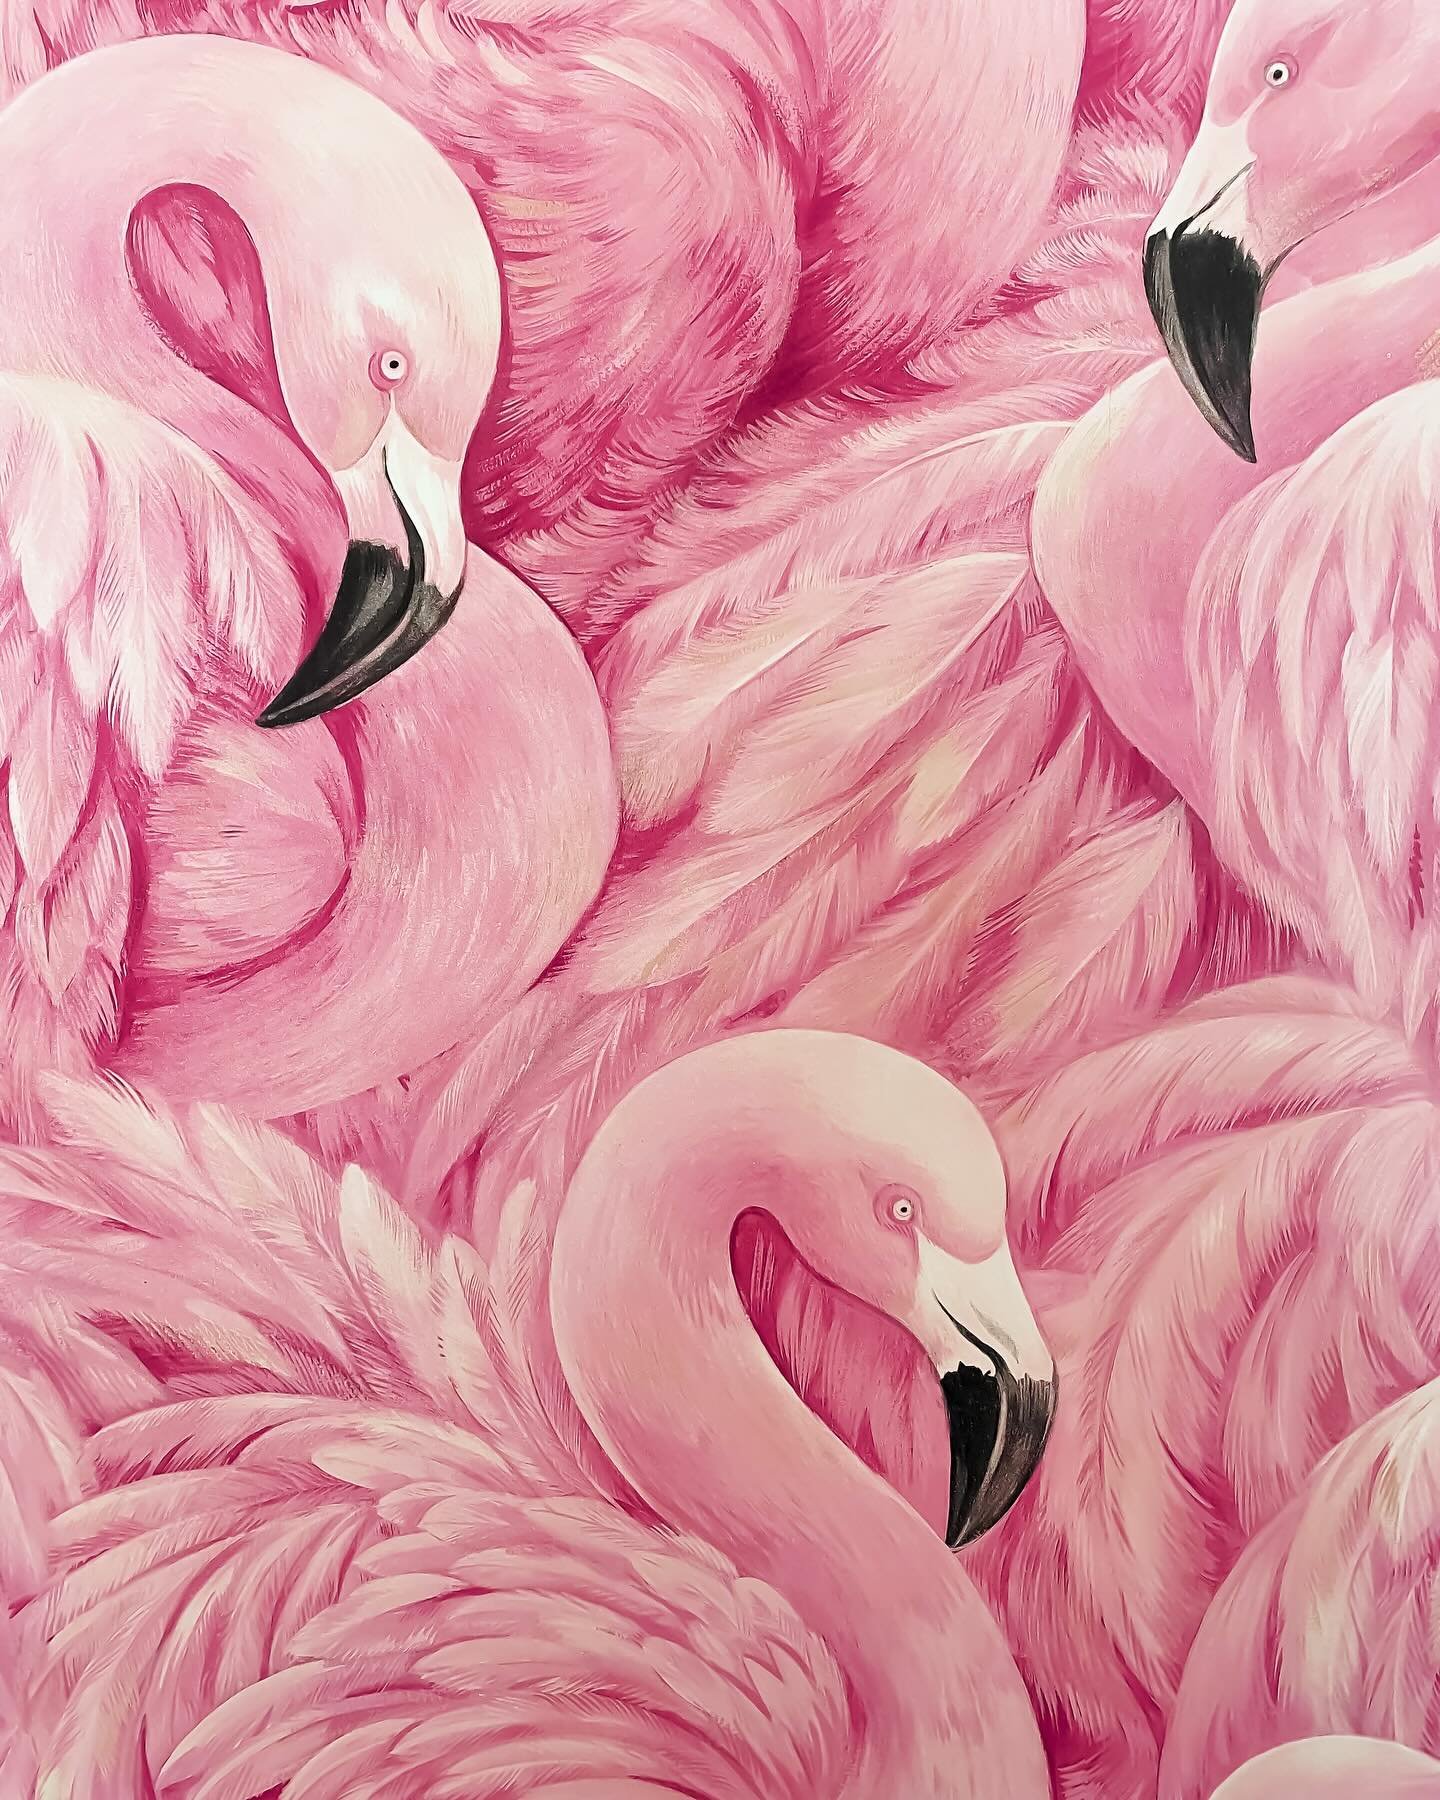 🦩💖Iykyk. If you don&rsquo;t, flock to the studio to find out!💖🦩

#wereobsessed #iykyk #legdayeveryday #flamingoparty #yogaheals #flamingosheal #hotyoganashville #flocktogether